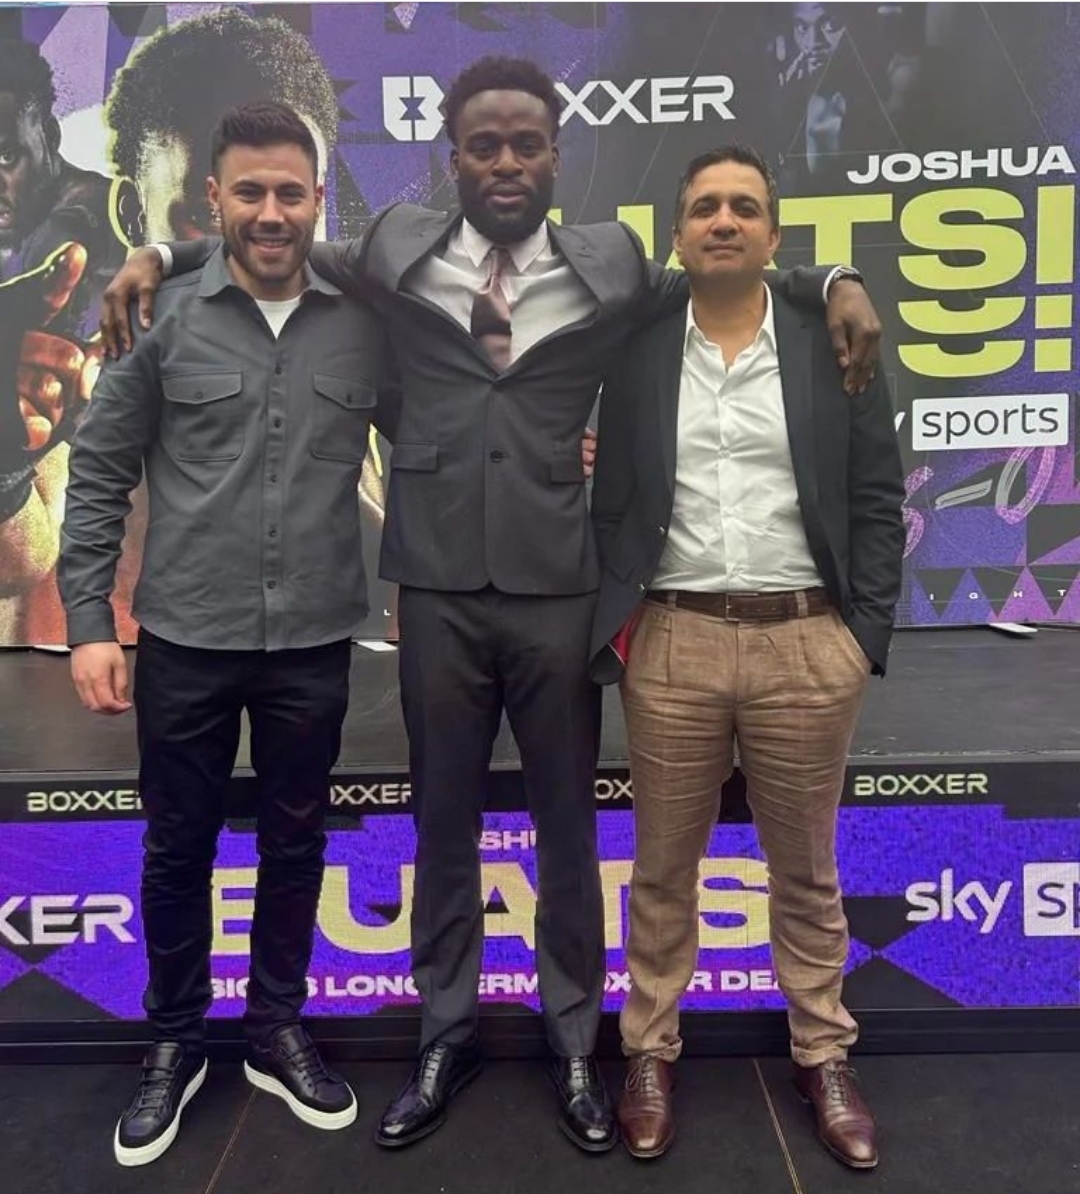 Sky Sports X Joshua Buatsi: A Match Made in Boxing Heaven